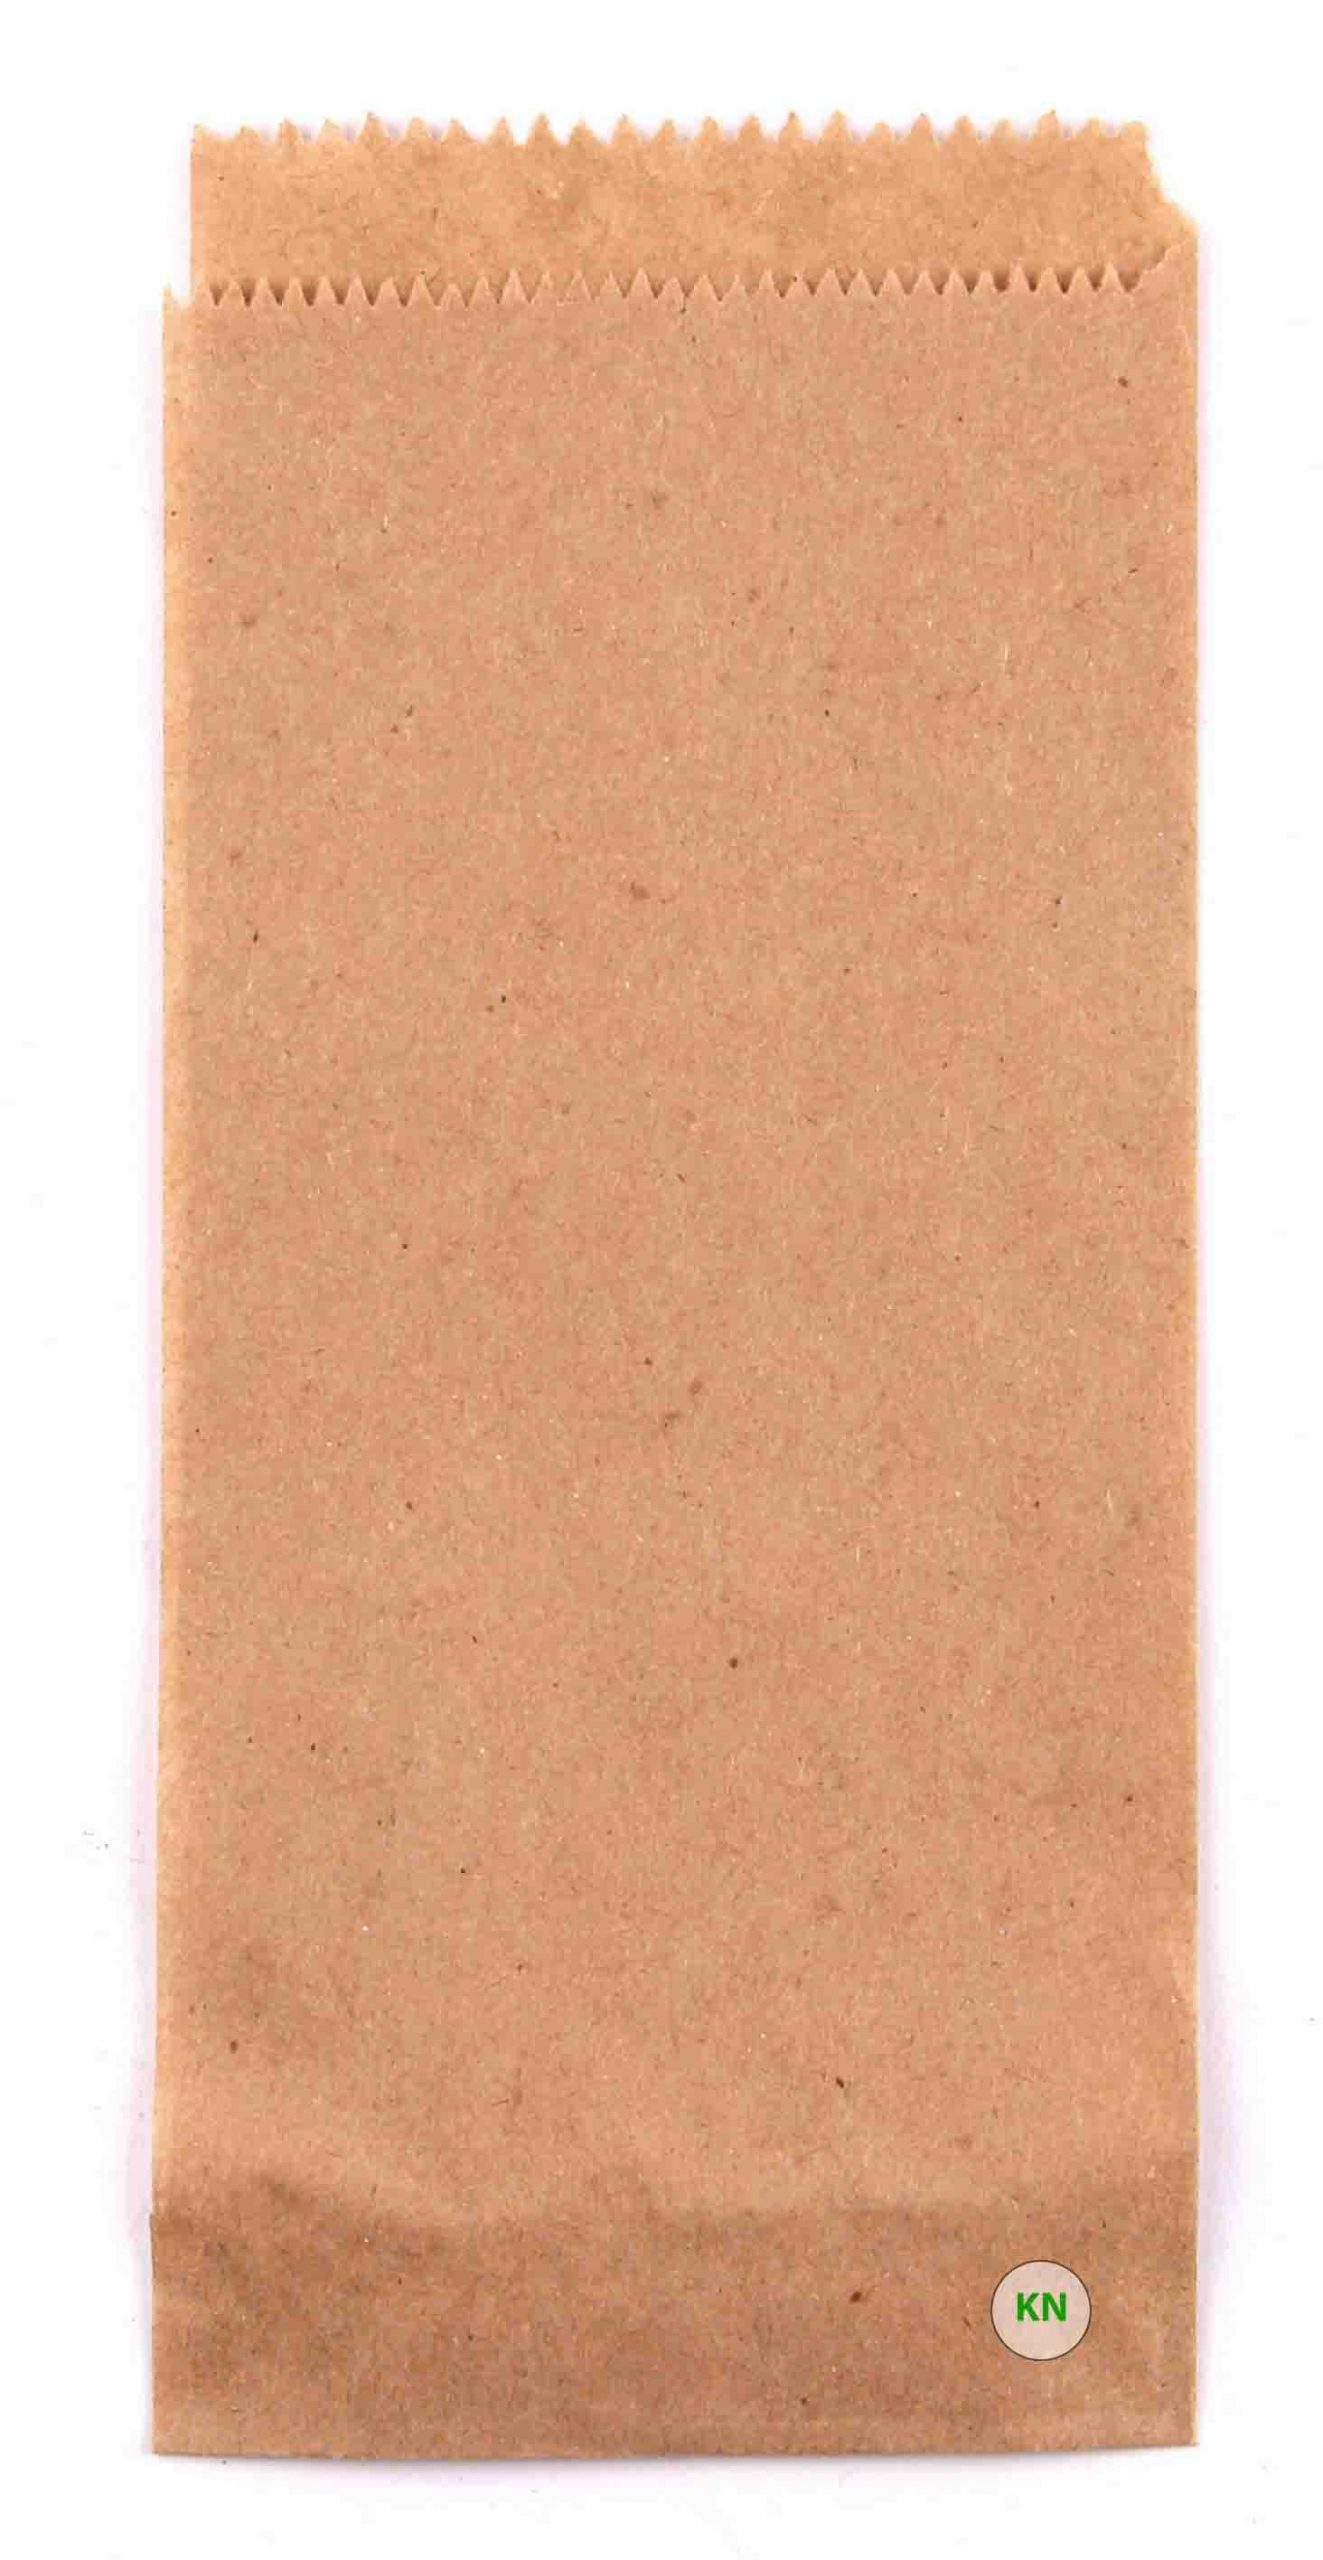 Пакет бумажный коричневый для французского хот-дога, 200 х 70 мм